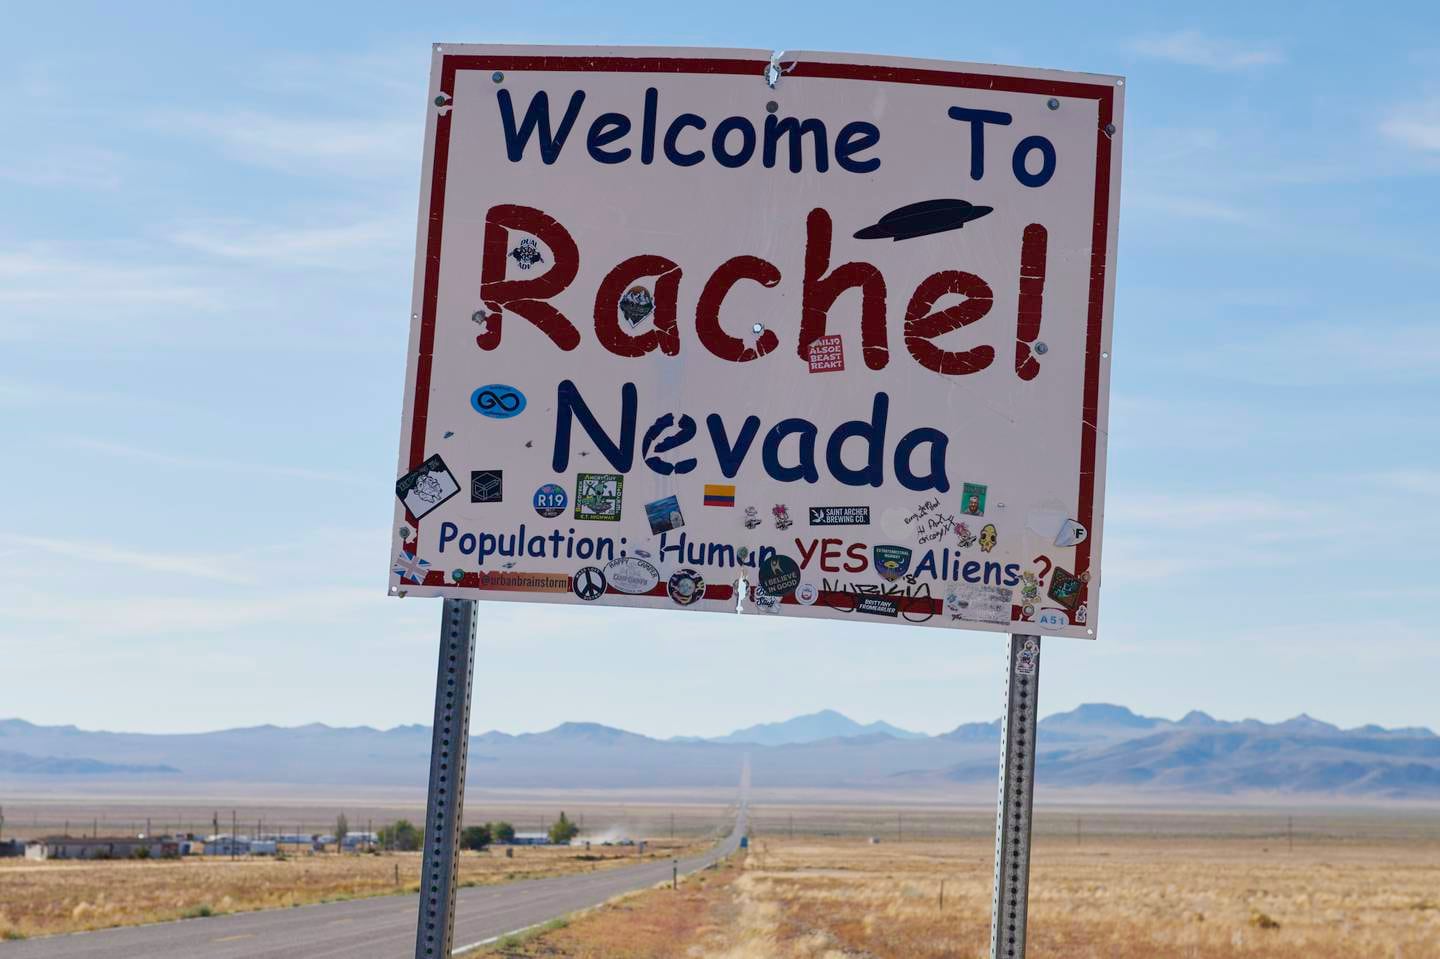 Mange brukte Rachel i Nevada som tilholdsted før den mye omtale stormingen av Area 51.